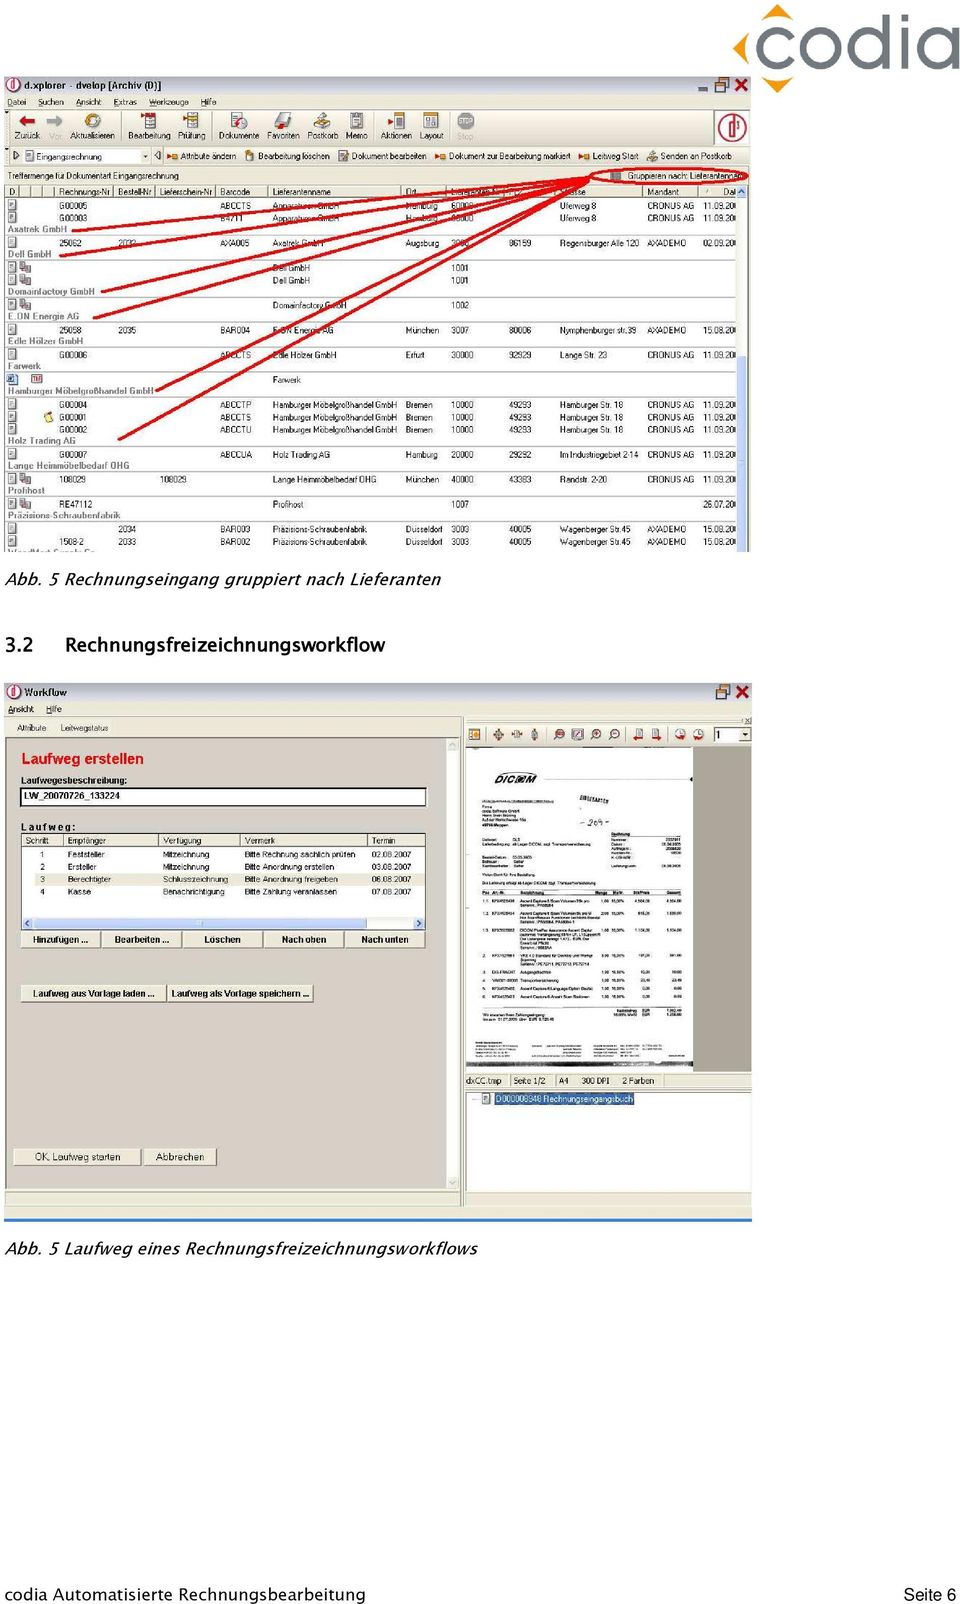 2 Rechnungsfreizeichnungsworkflow Abb.